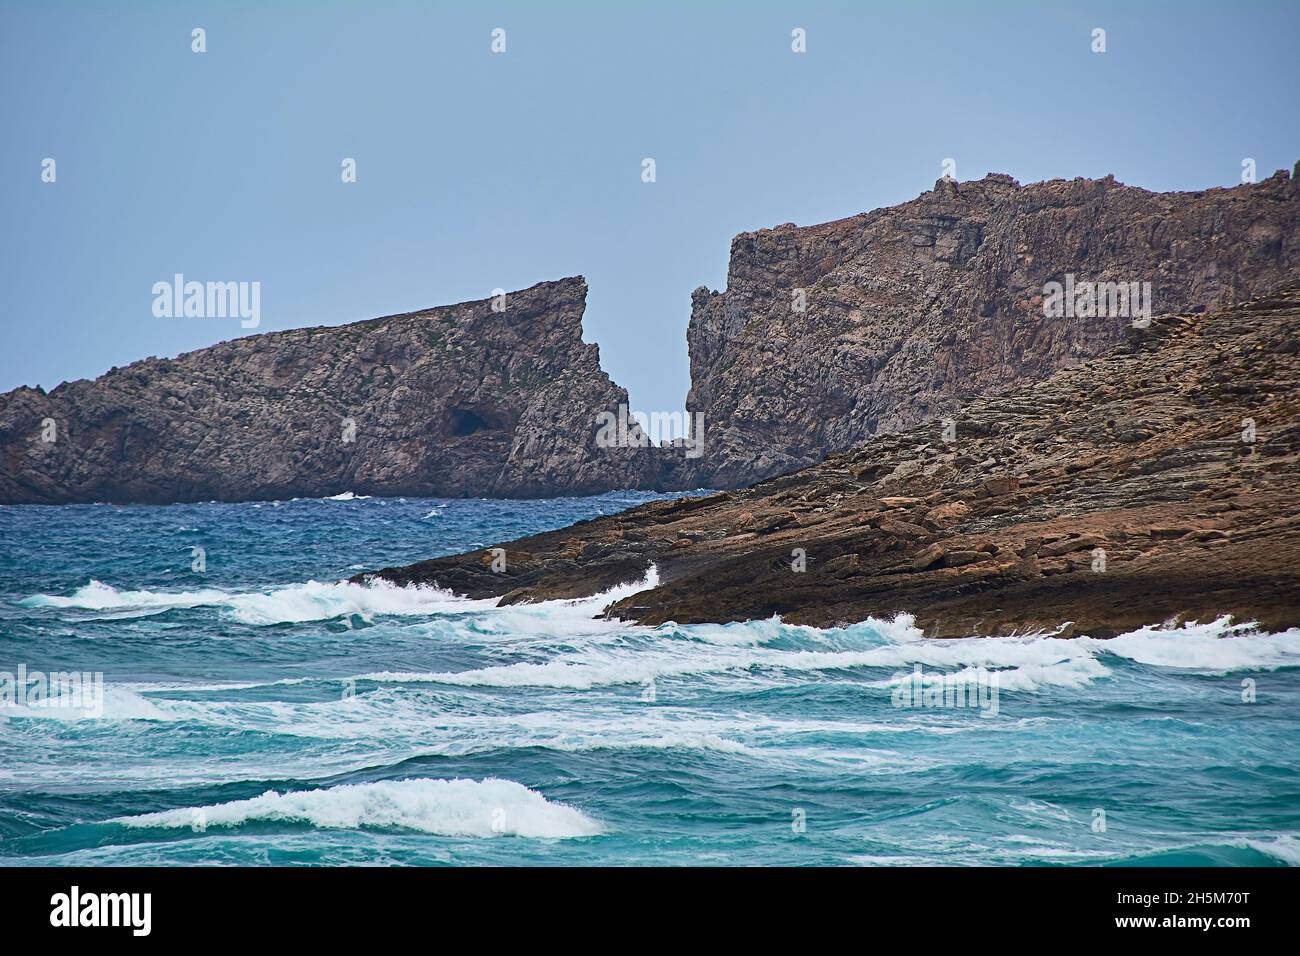 Acantilado en la costa en forma de carta frente al Mar Mediterráneo, Islas Baleares, aguas turquesas, aguas en movimiento Foto de stock